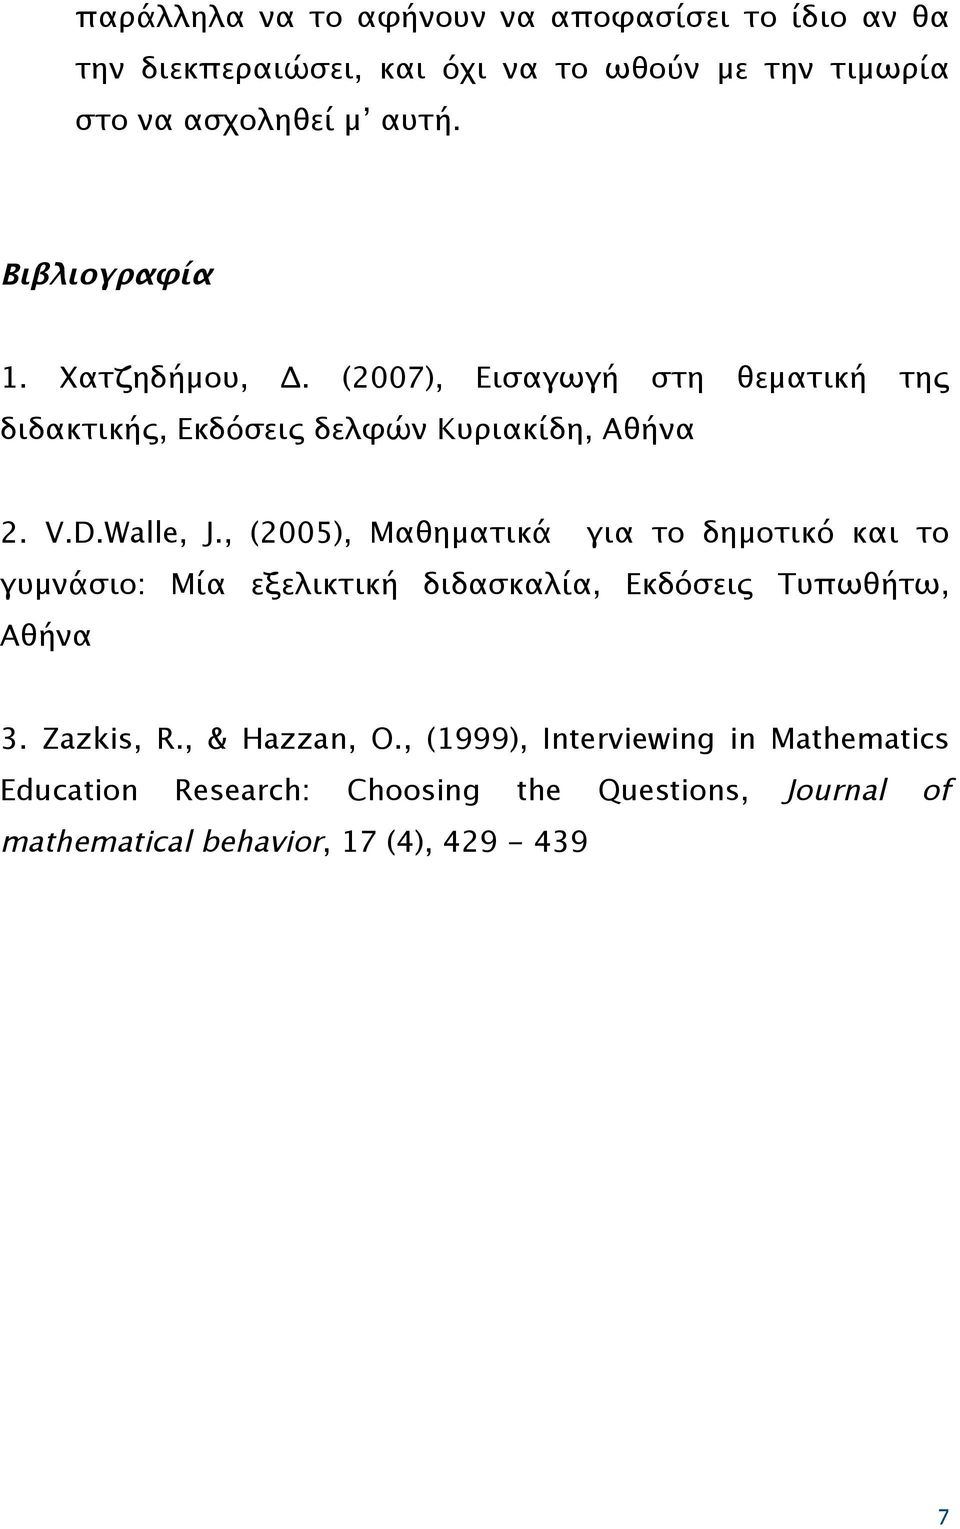 , (2005), Μαθηματικά για το δημοτικό και το γυμνάσιο: Μία εξελικτική διδασκαλία, Εκδόσεις Τυπωθήτω, Αθήνα 3. Zazkis, R.